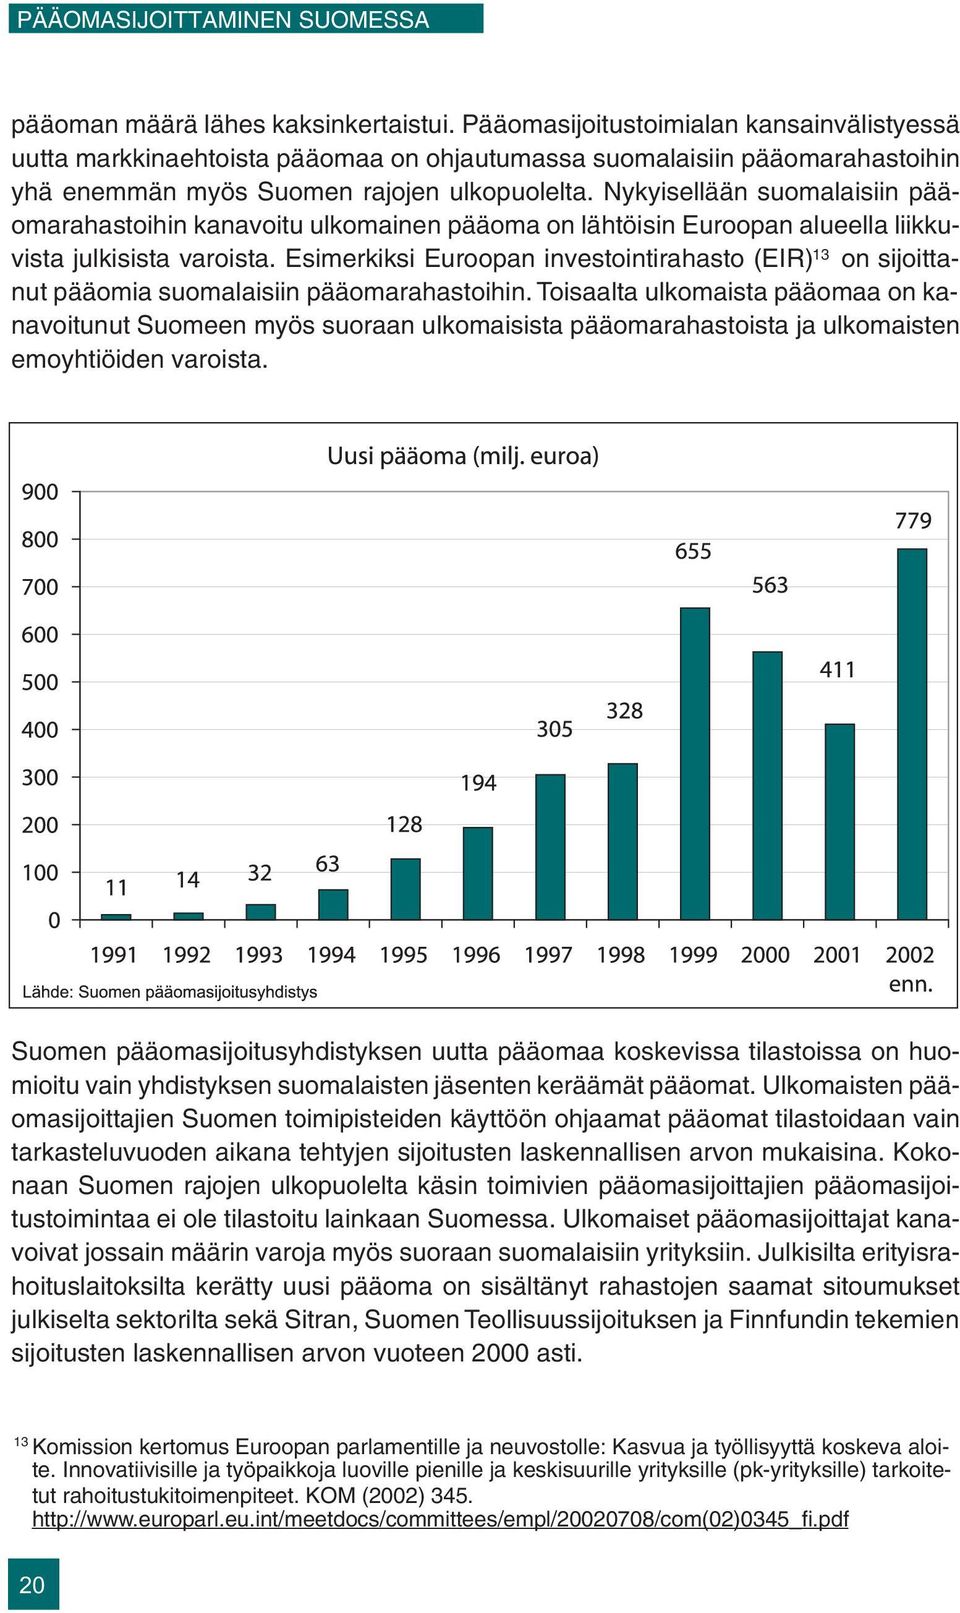 Nykyisellään suomalaisiin pääomarahastoihin kanavoitu ulkomainen pääoma on lähtöisin Euroopan alueella liikkuvista julkisista varoista.